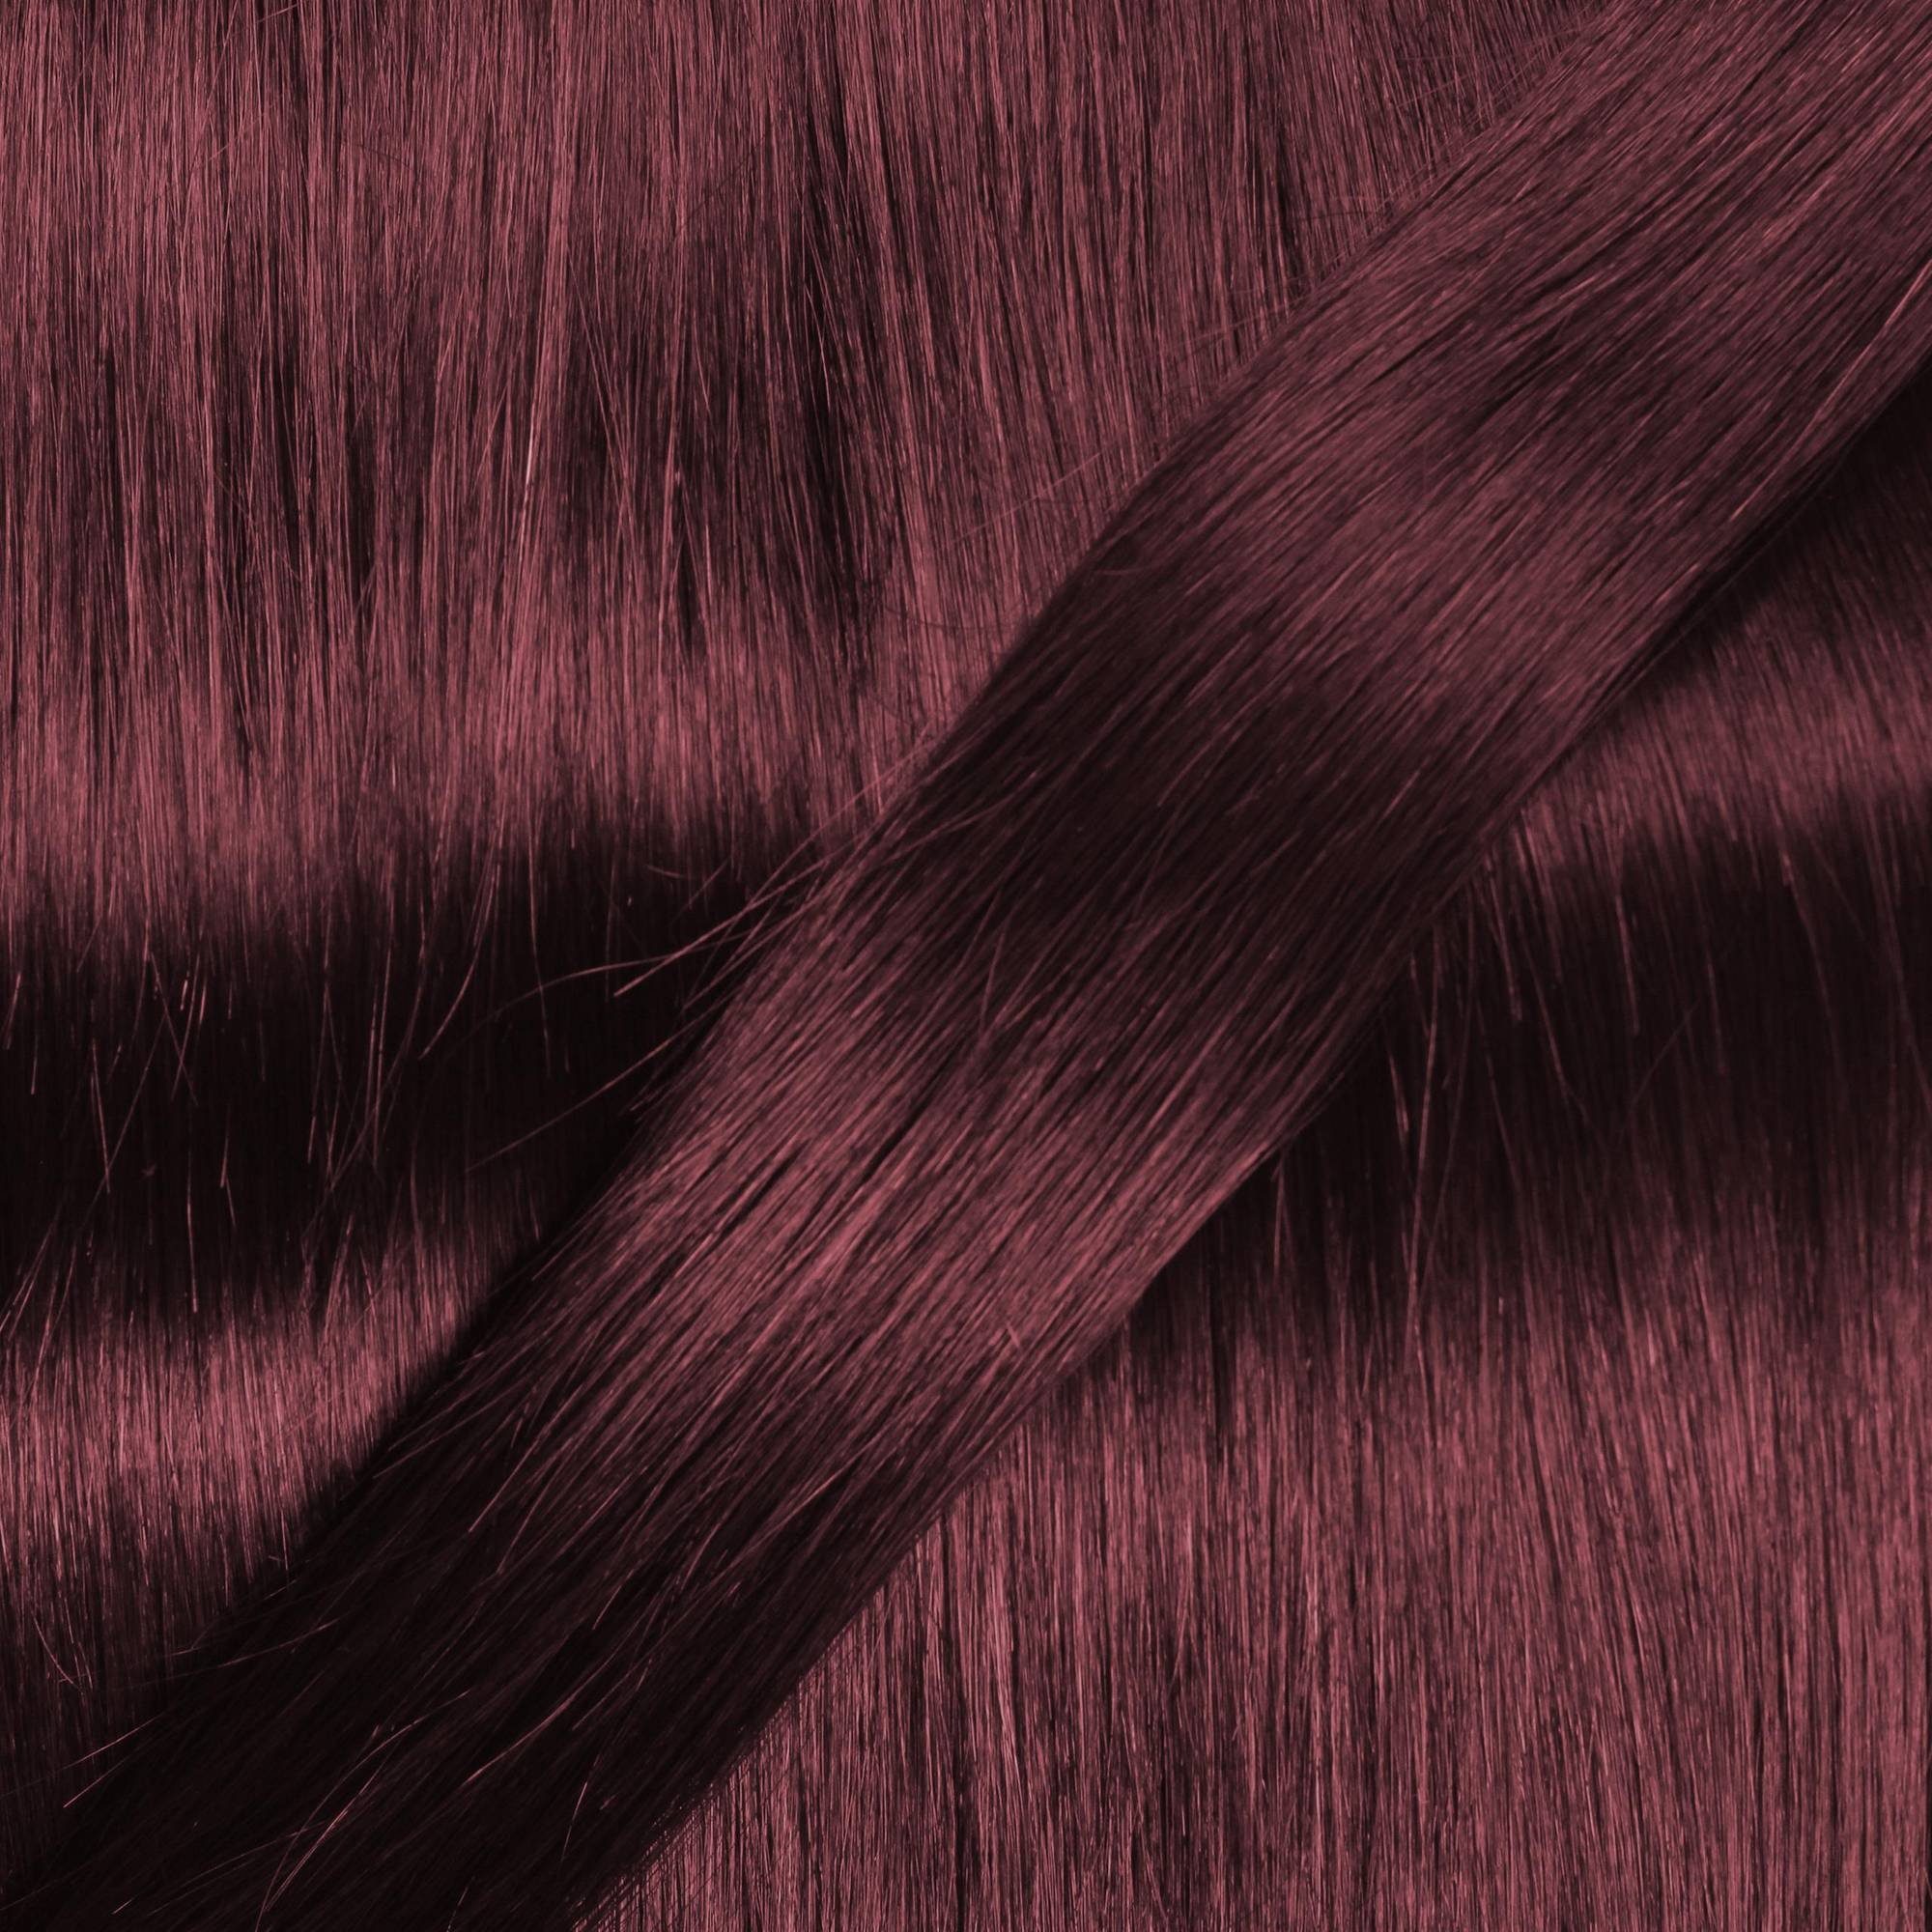 Extensions Violett 0.5g 40cm Hellbraun hair2heart #55/66 Echthaar-Extension gewellt Bonding